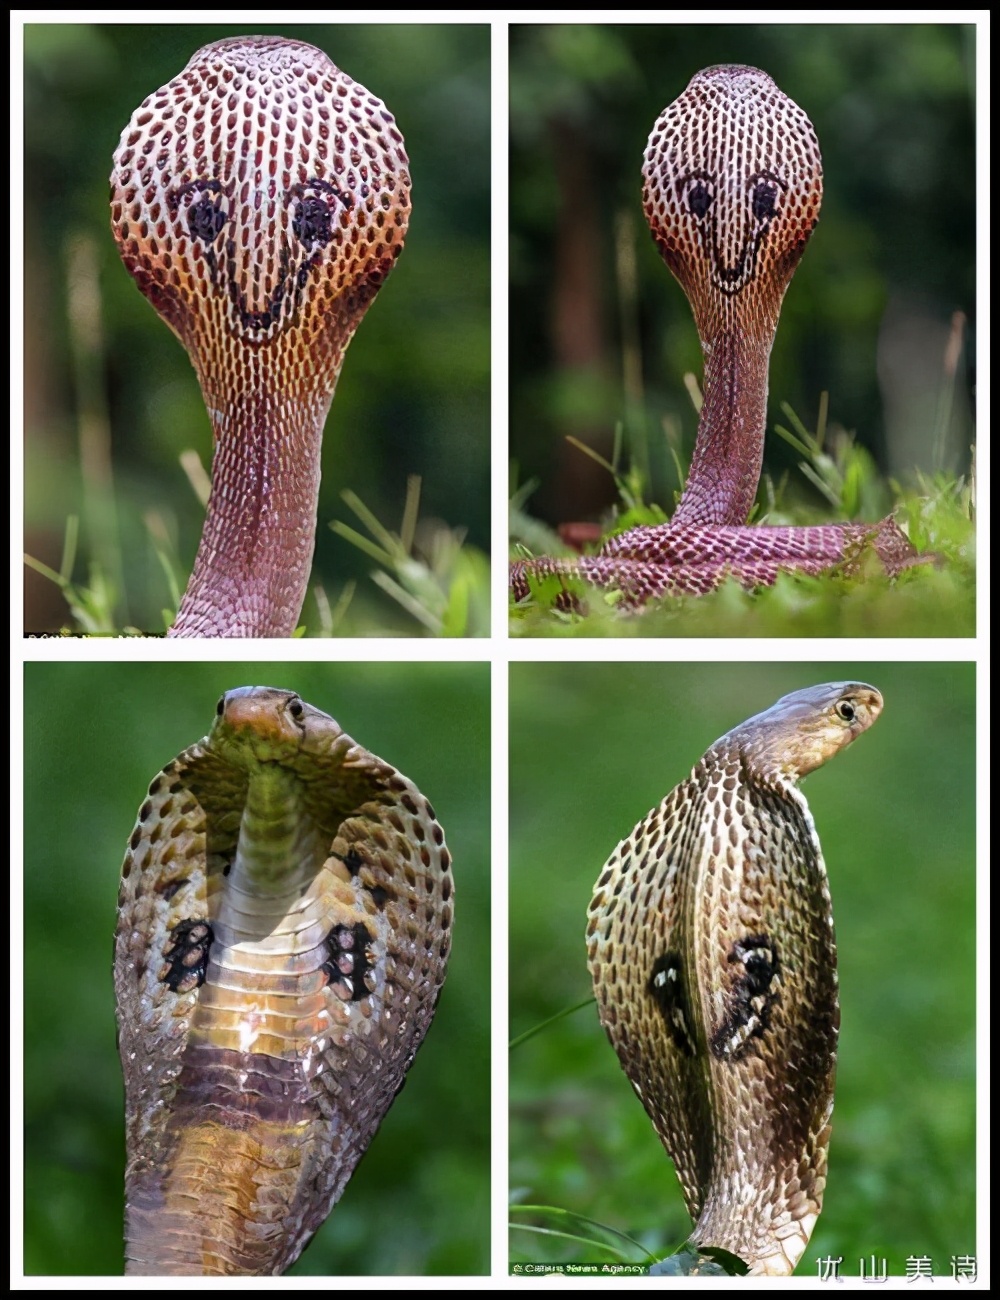 世界上有多少种蛇图片